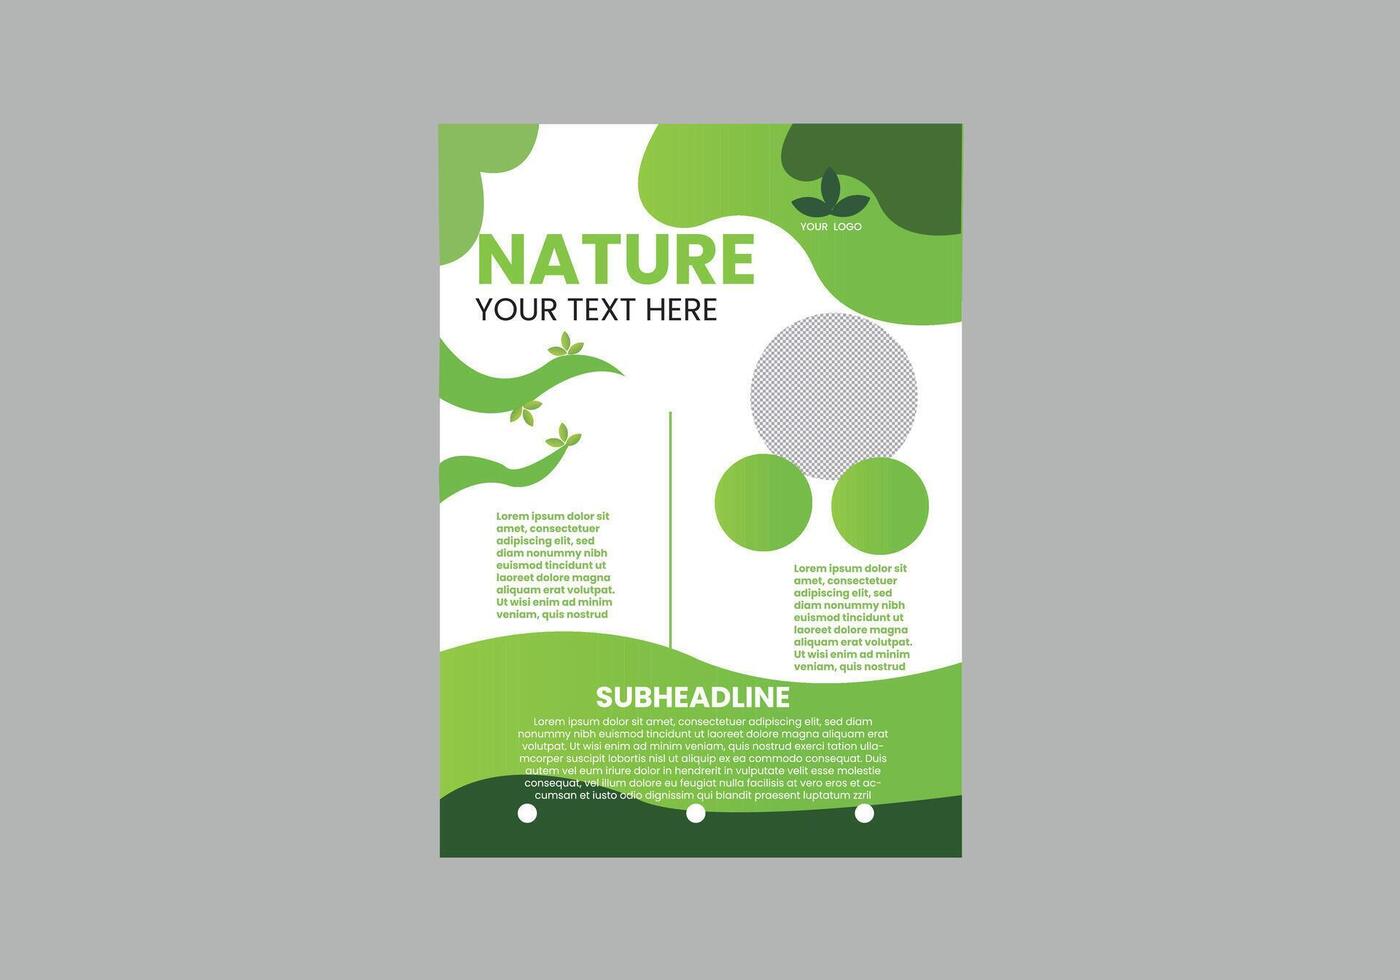 natuur flyer ontwerp vector